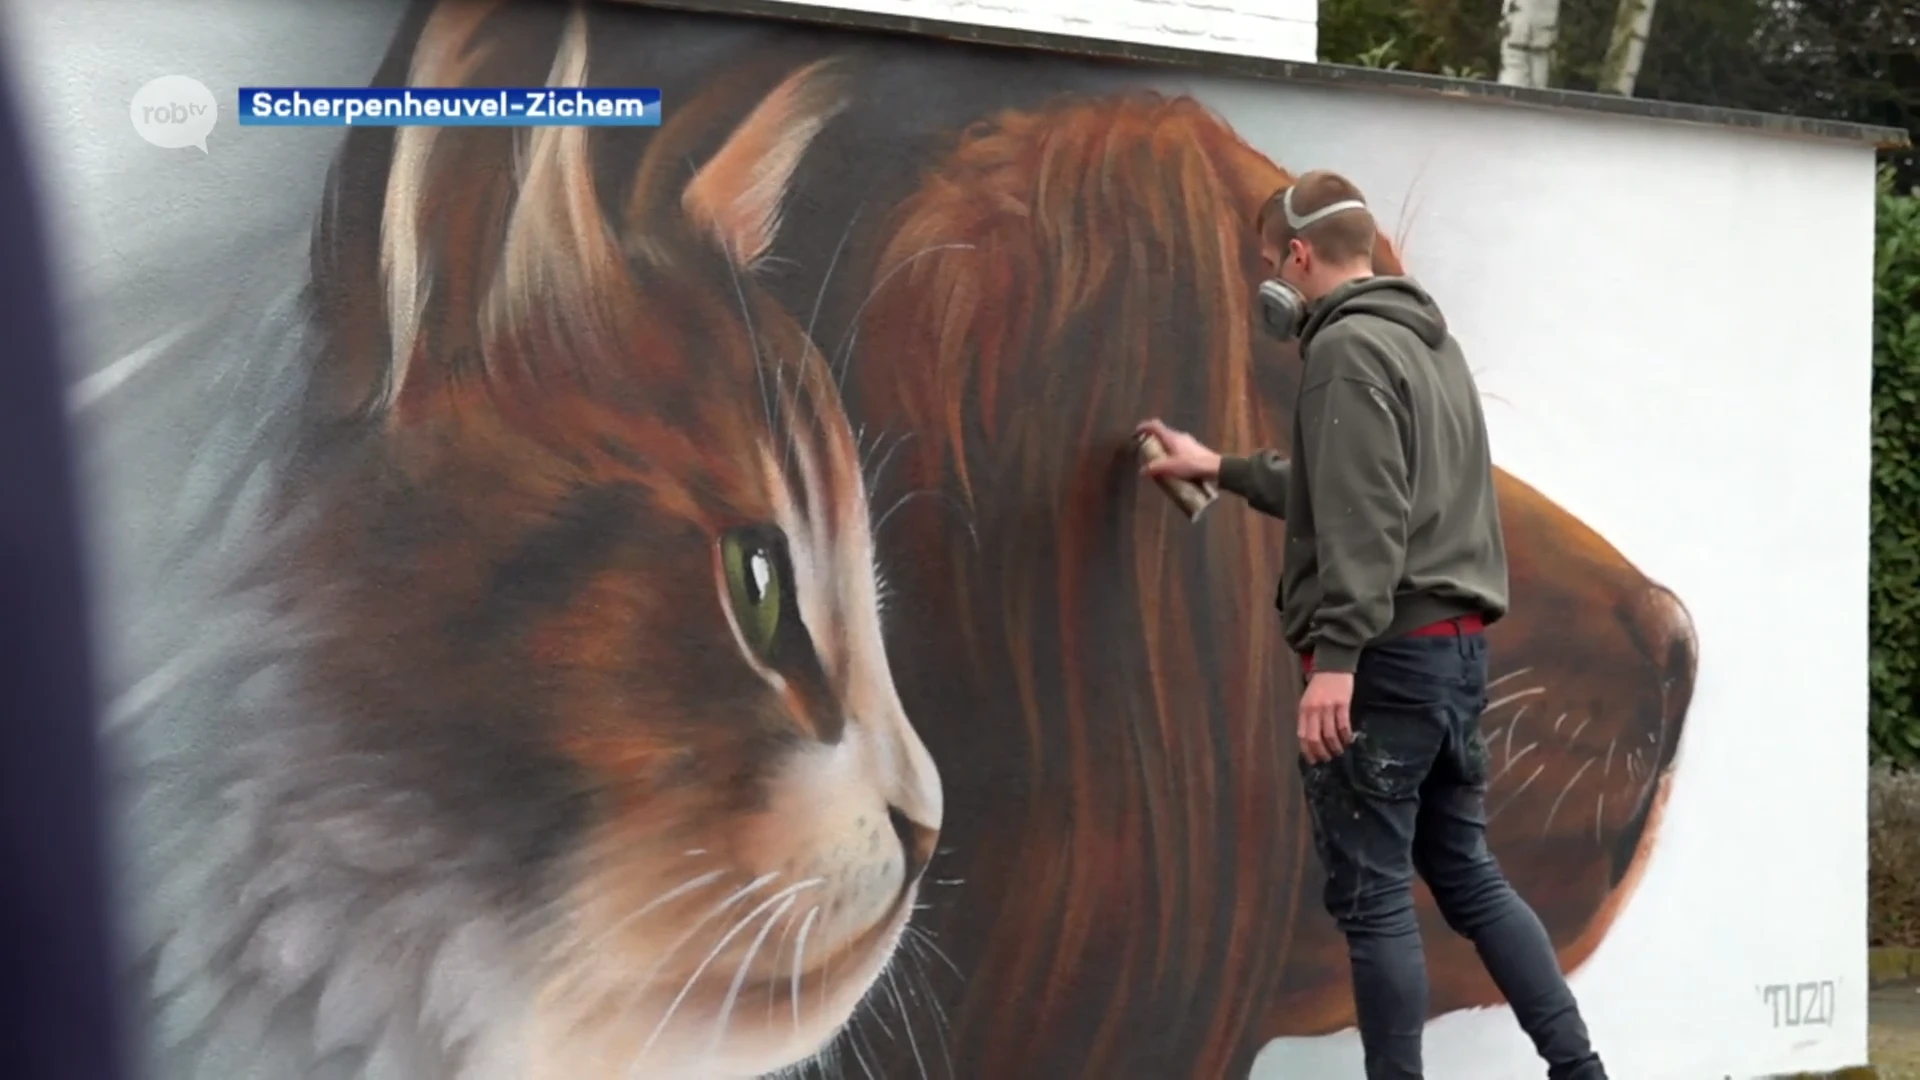 TUZQ fleurt Mannenberg en dierenartsenpraktijk BEESTIG in Scherpenheuvel op met nieuwe muurschildering